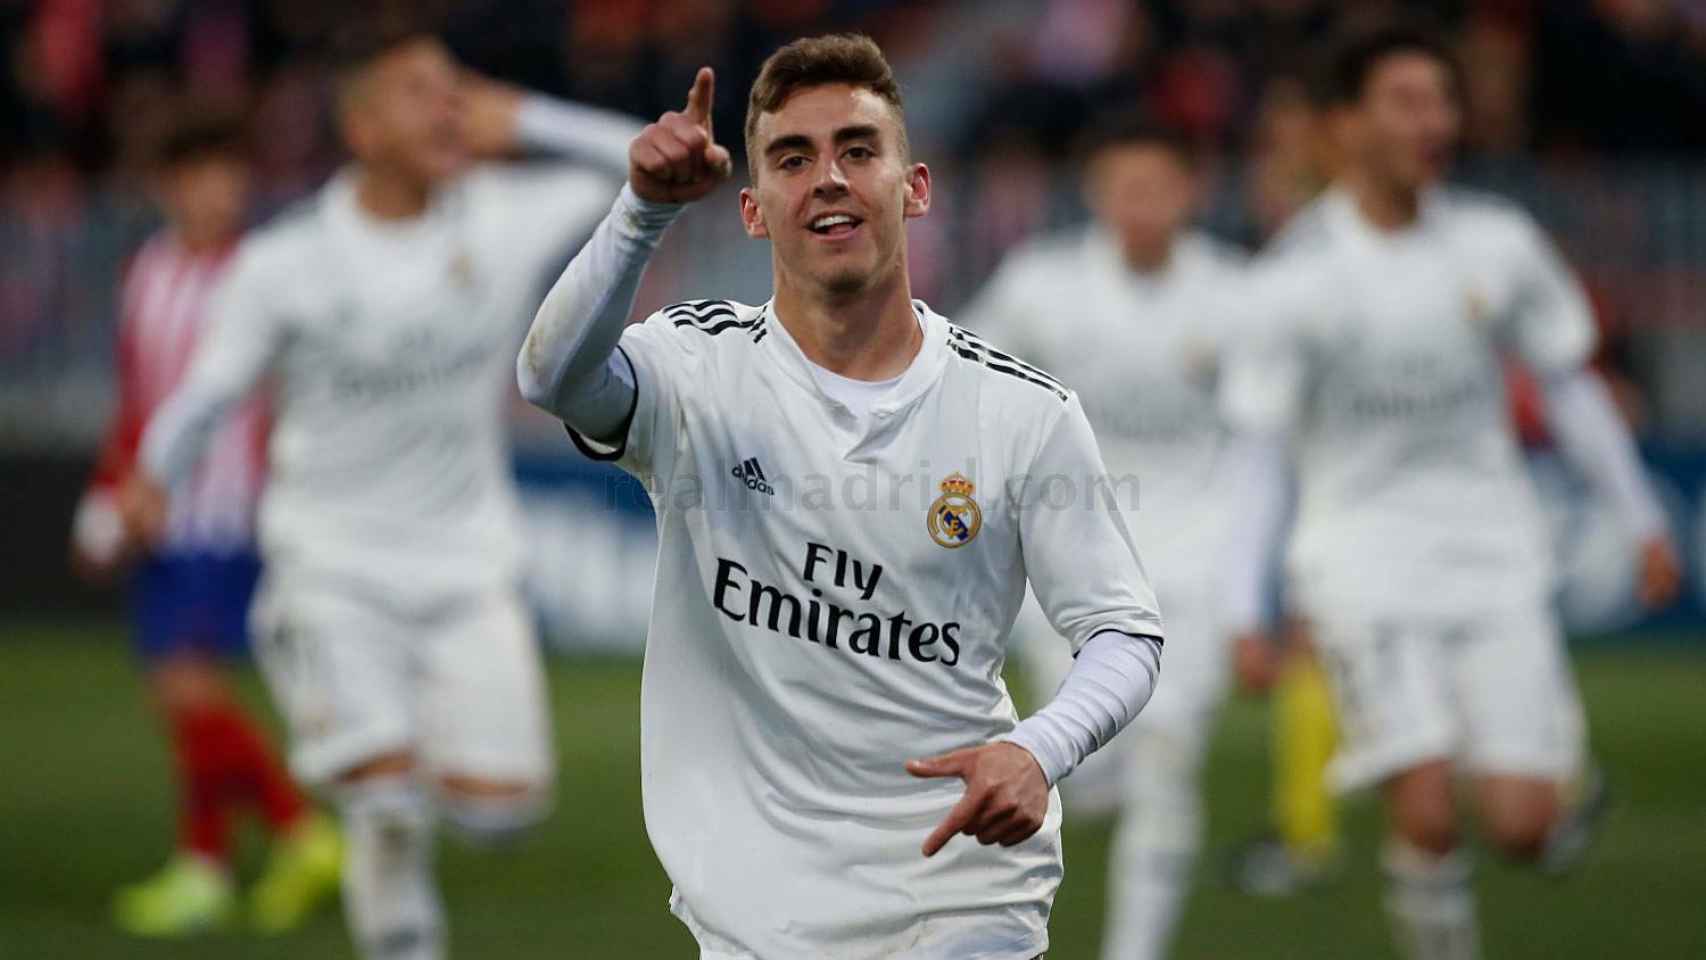 Alberto celebra su gol en el Atlético de Madrid - Real Madrid Juvenil A de la UEFA Youth League